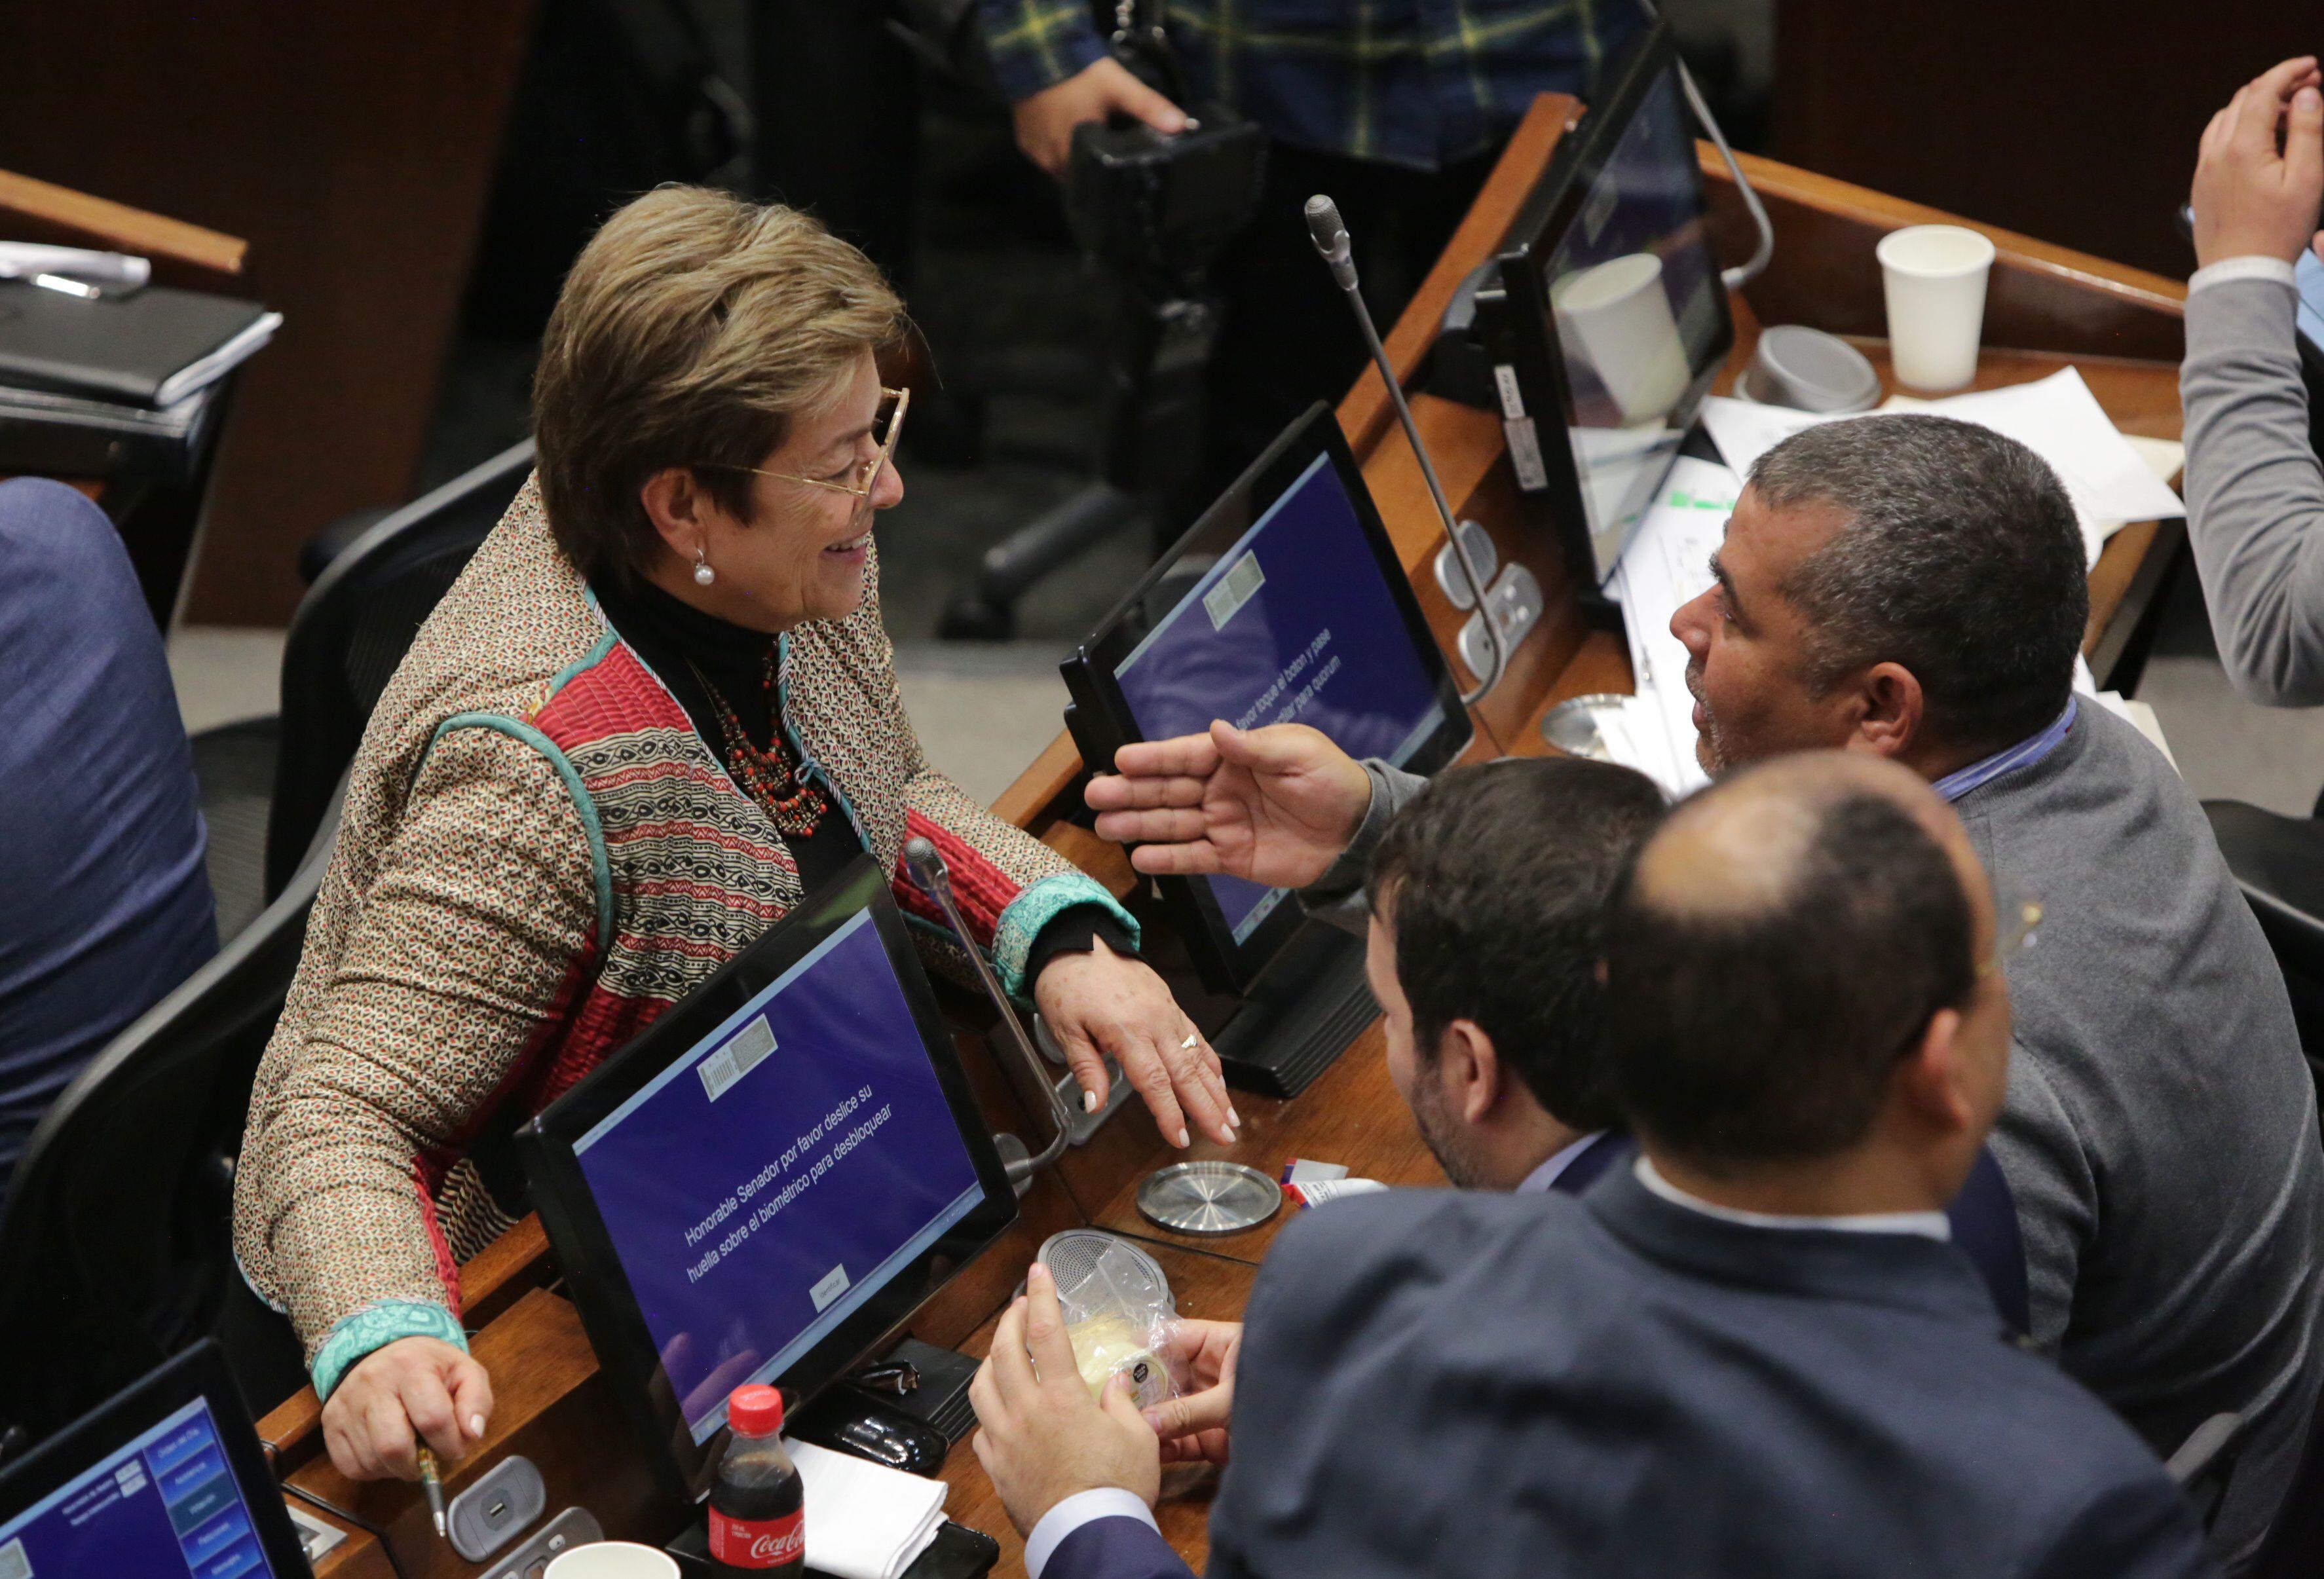 plenaria del senado aprueba la reforma pensional de petro. ¿qué pasará con los ahorros de los colombianos?